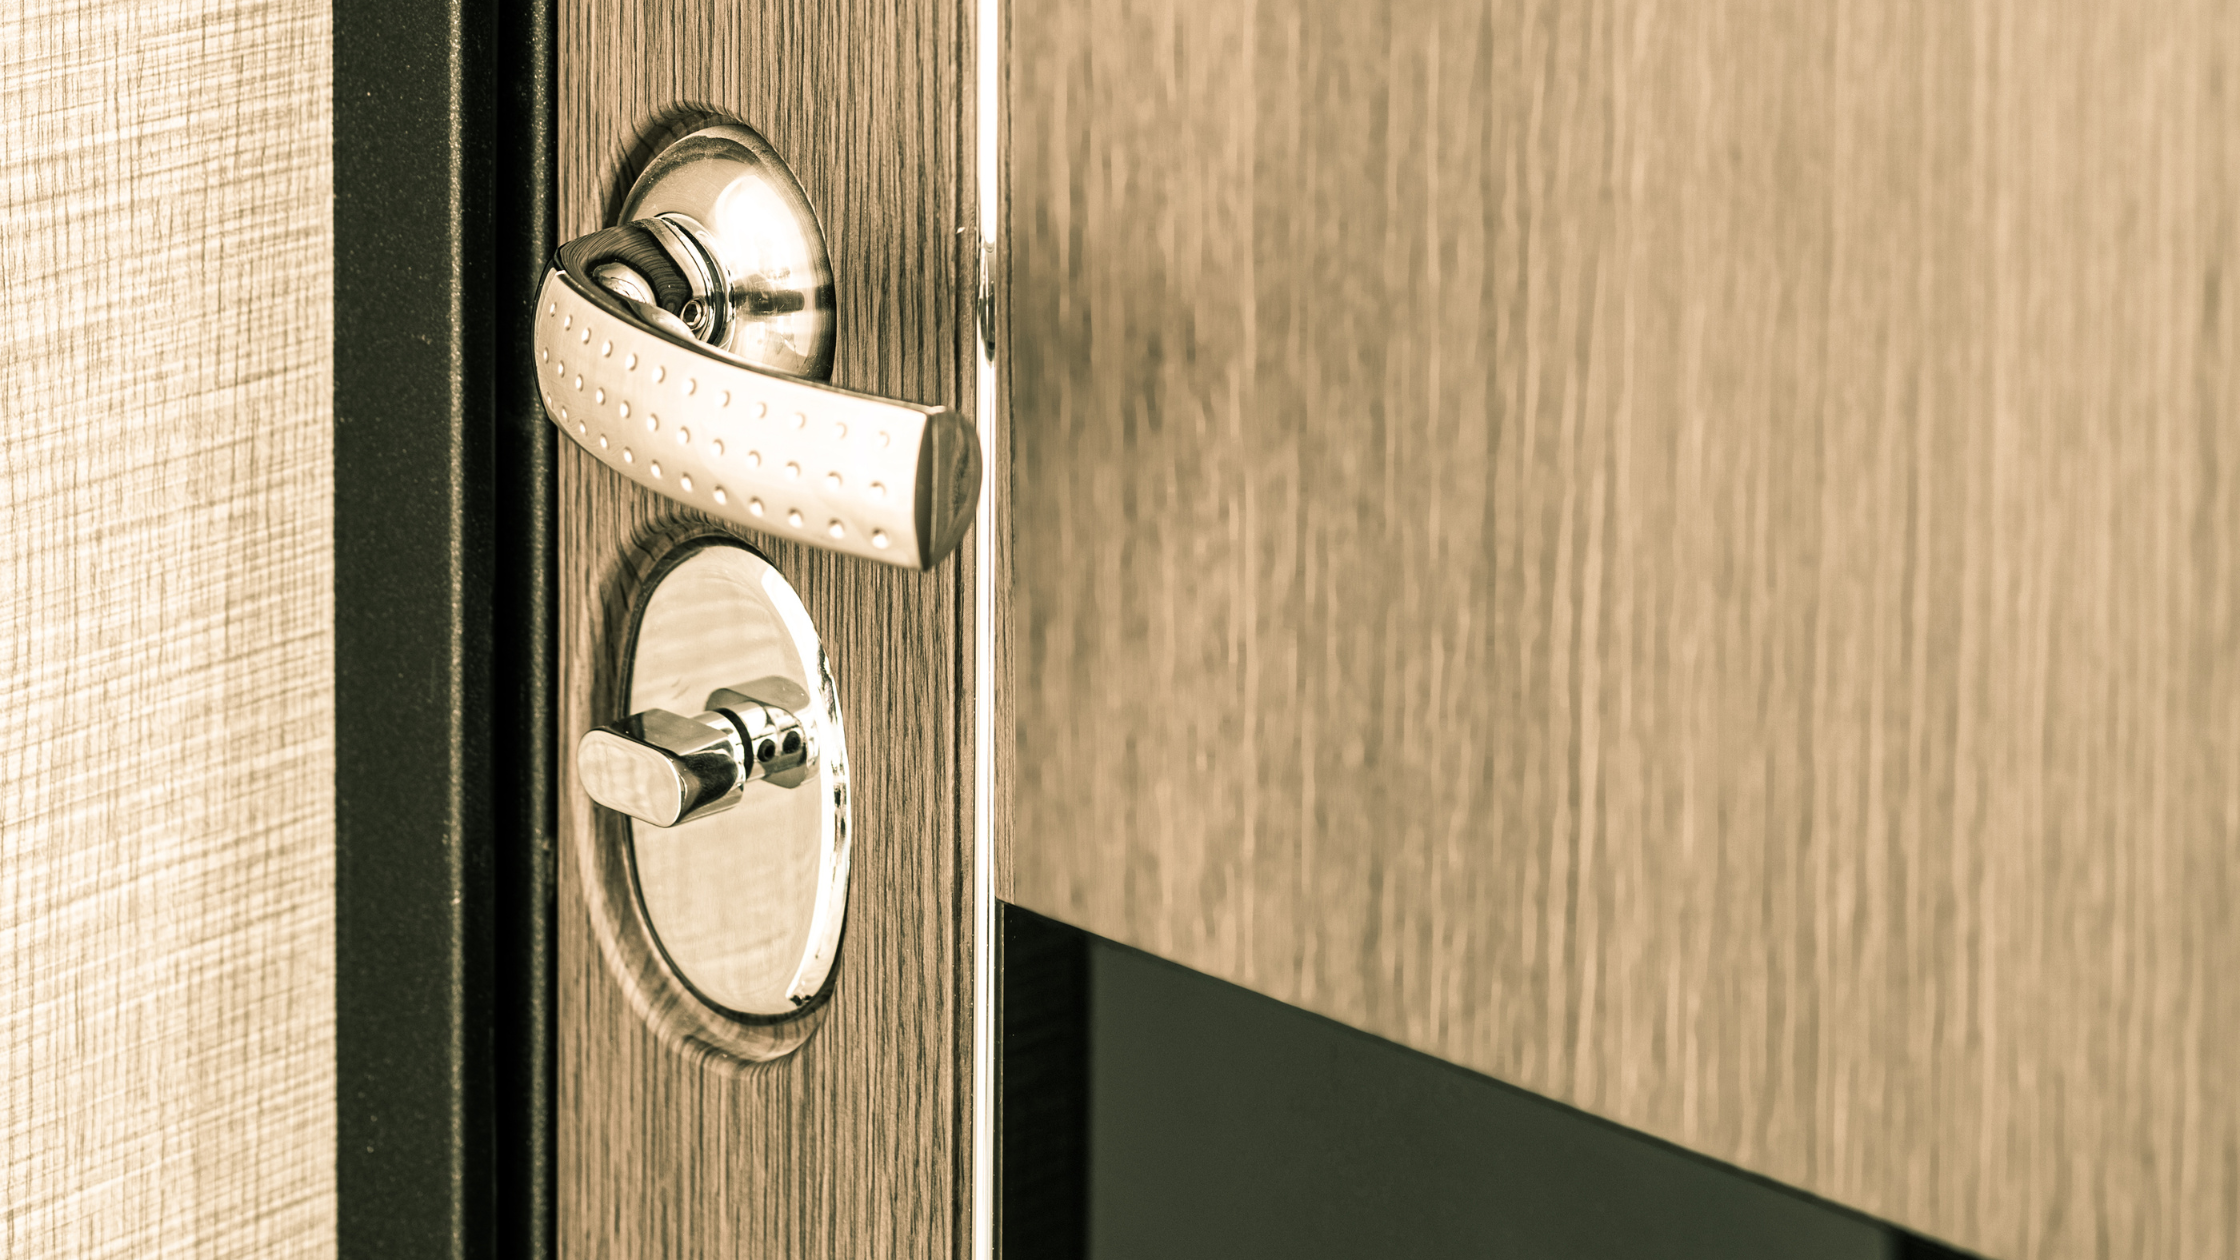 Instala una puerta acorazada y mejora la seguridad de tu hogar